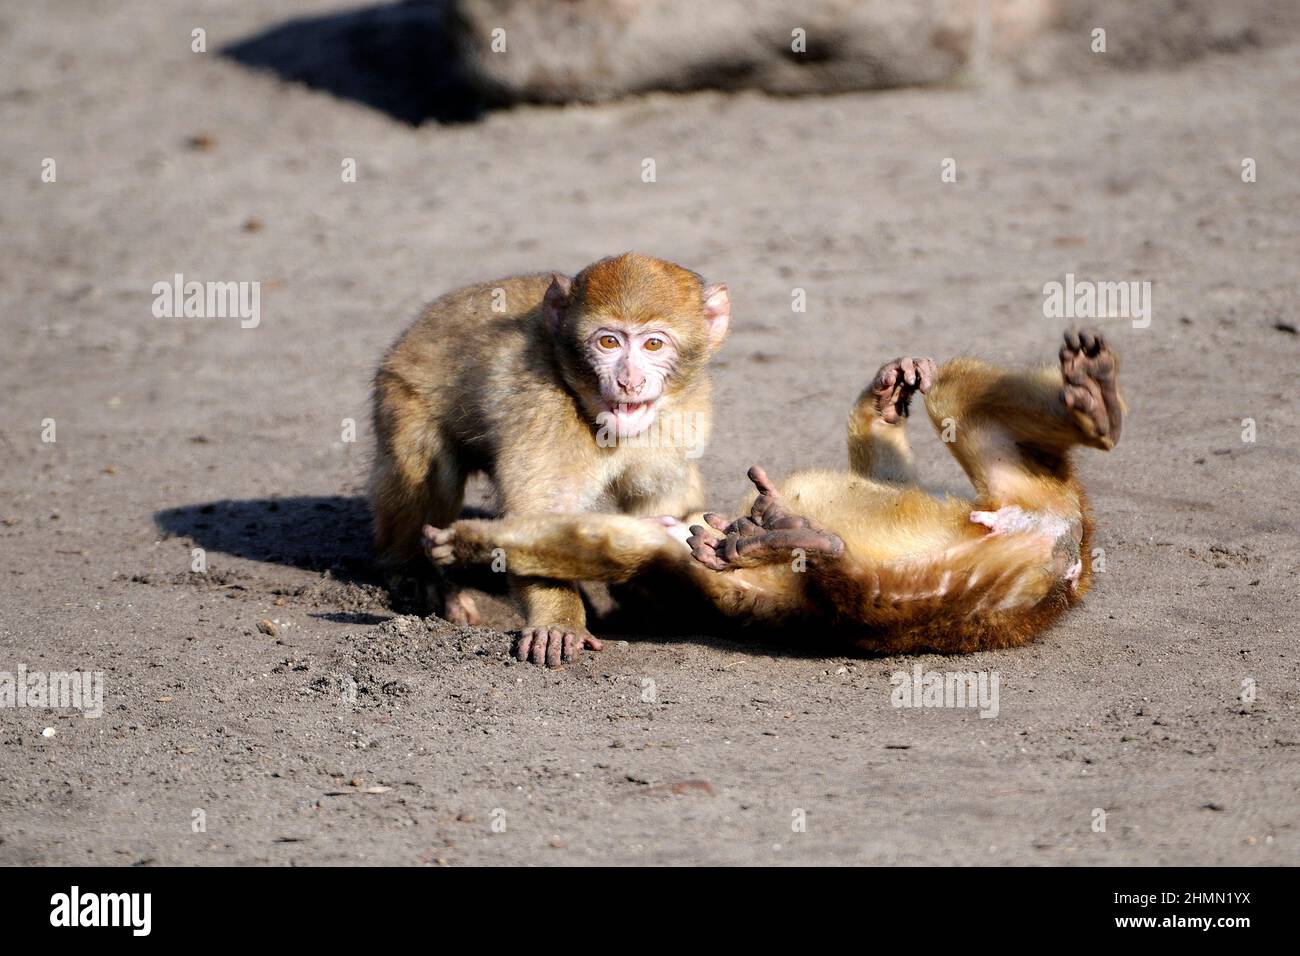 barbary ape, macaco di barbary (Macaca sylvanus), due scimmie che suonano, Marocco Foto Stock